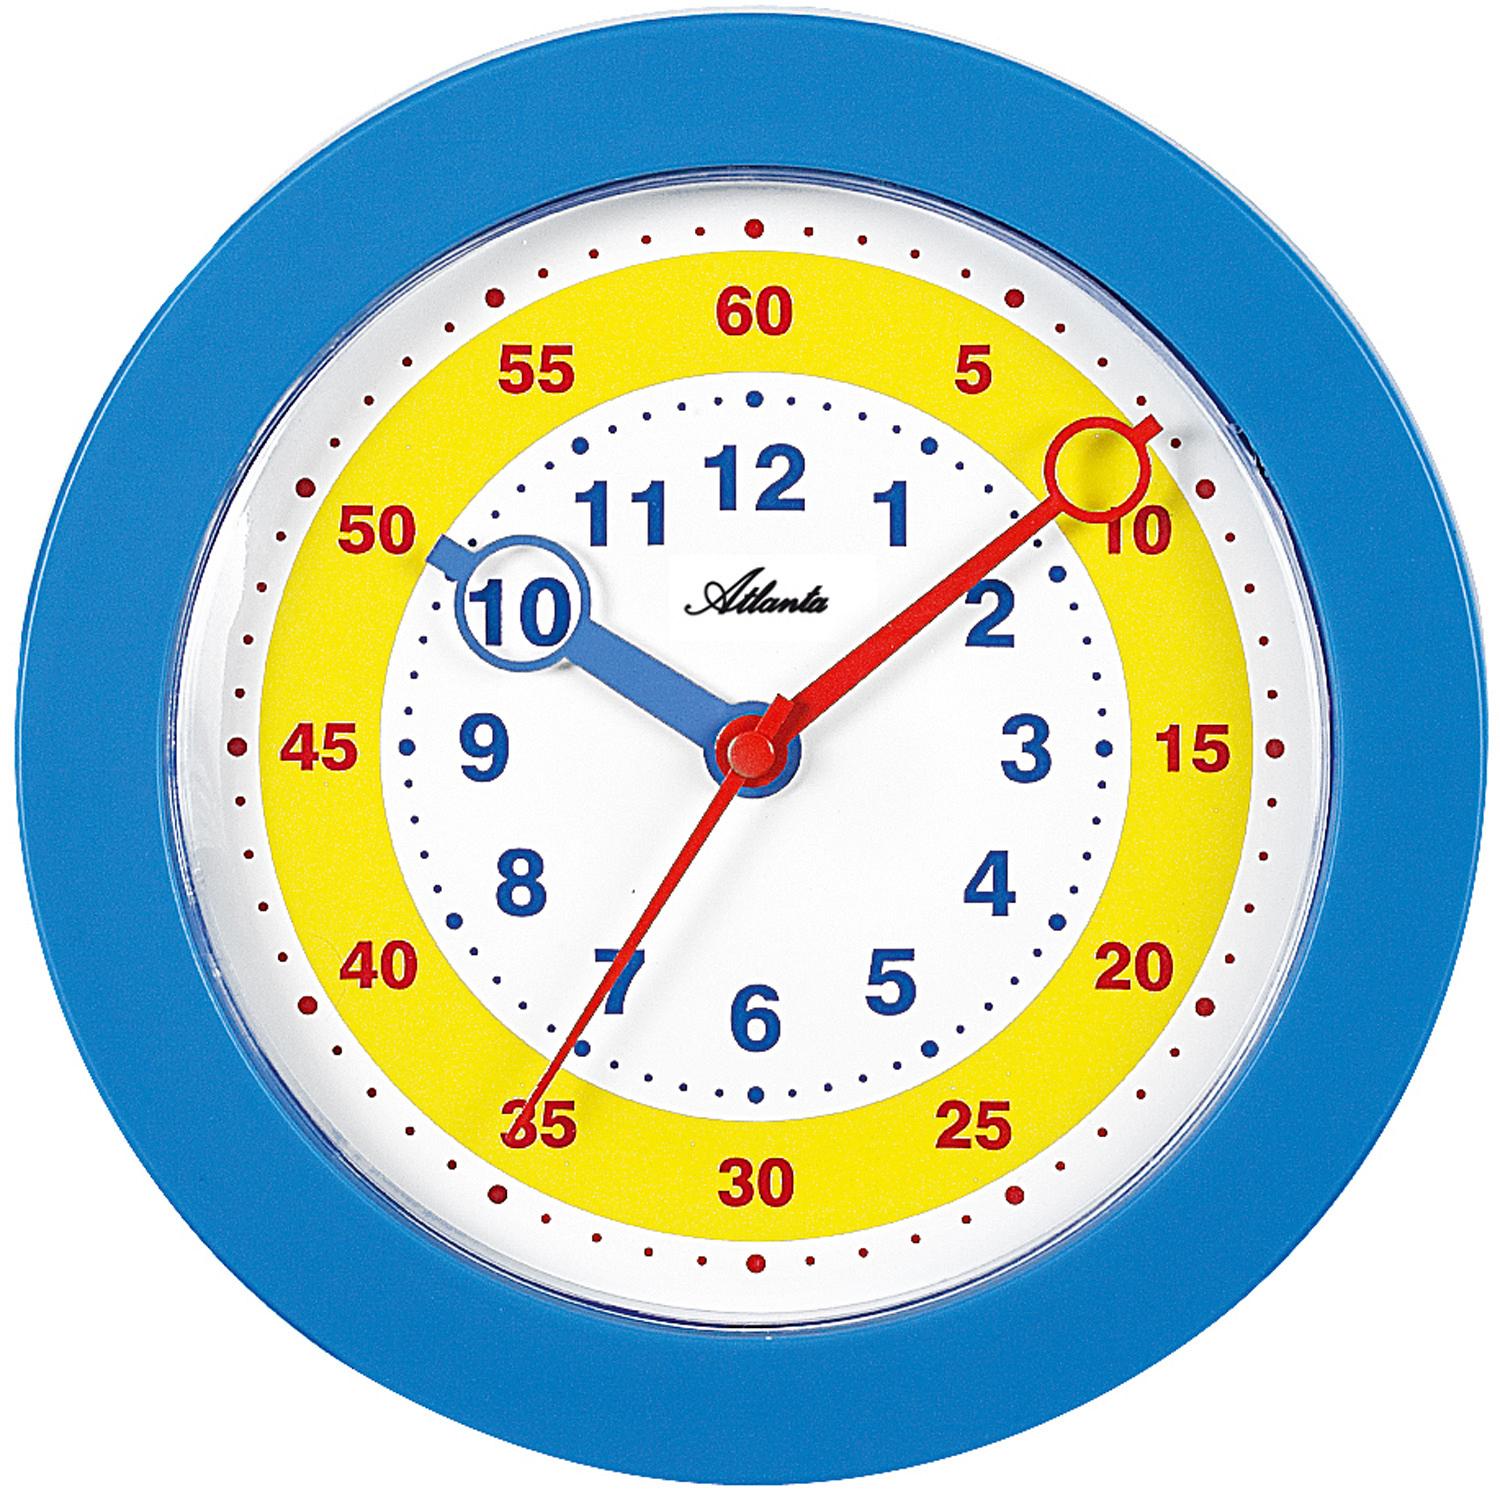 Циферблат часов для обучения. Часы циферблат для детей. Часы обучающие для детей. Часы с минутами для детей. Модель часов для детей.